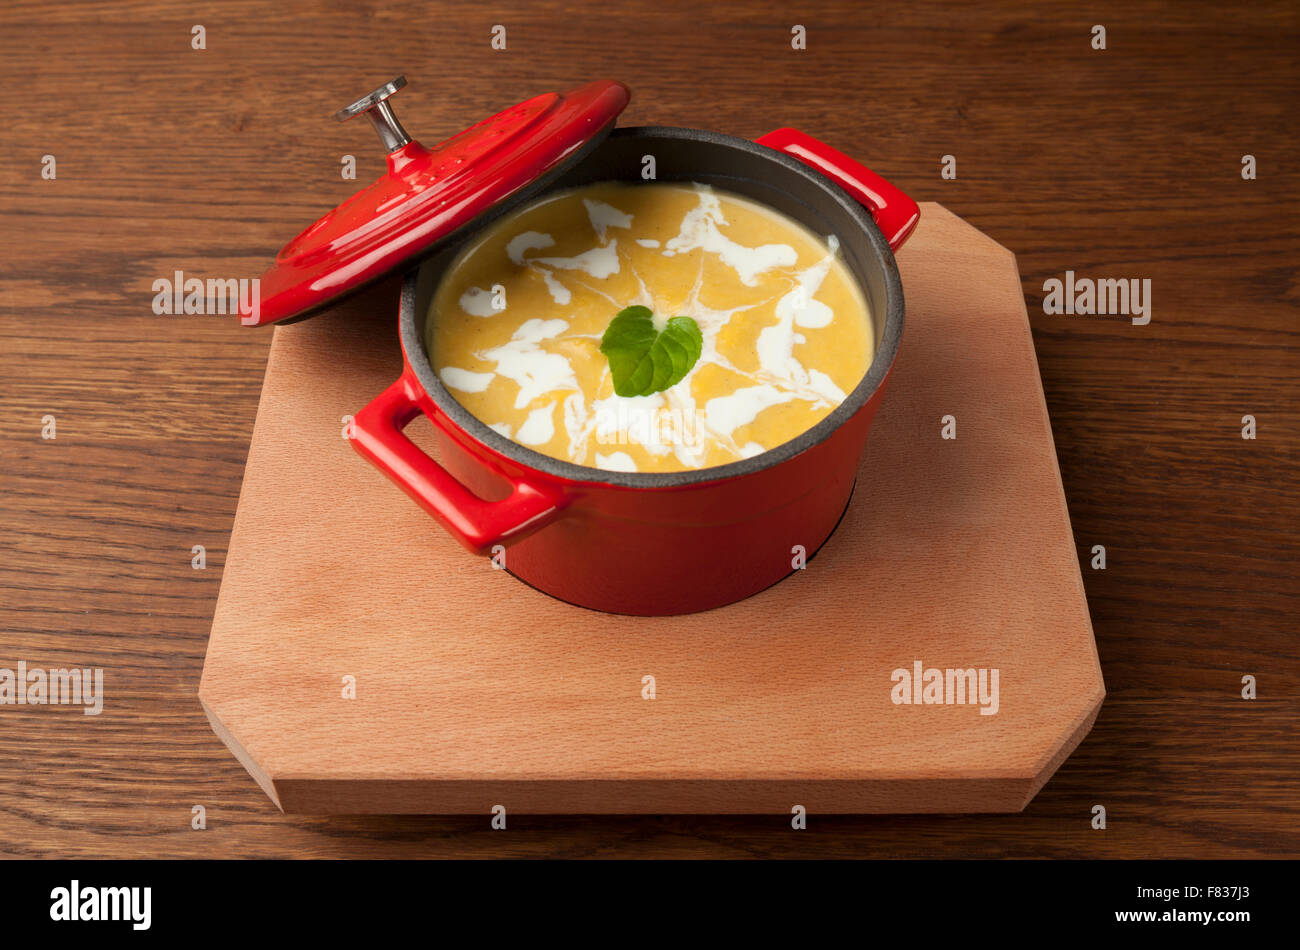 Zuppa di pollo in una ciotola rossa sul piatto di legno Foto Stock